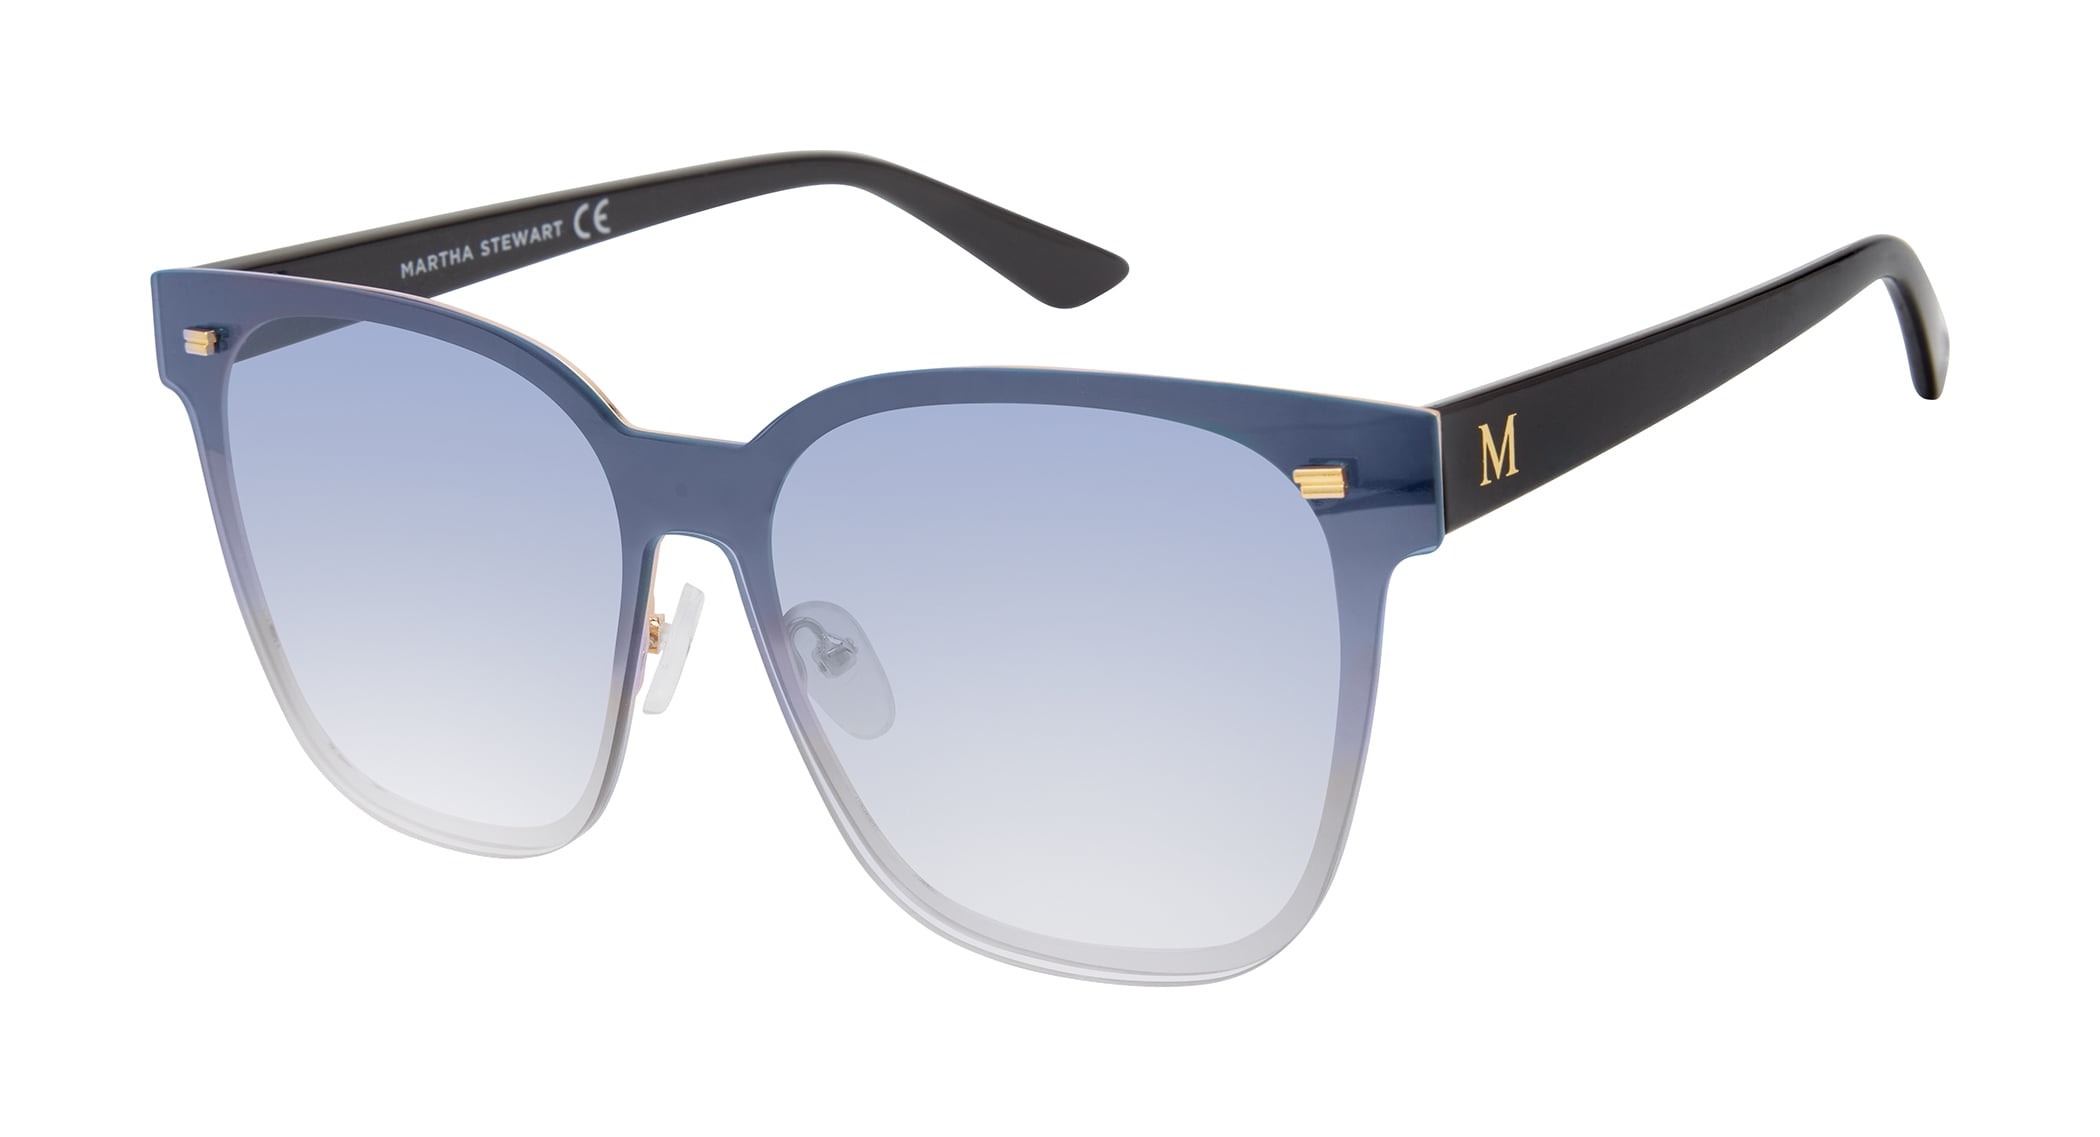 Buy White Sunglasses for Women by Bolon Online